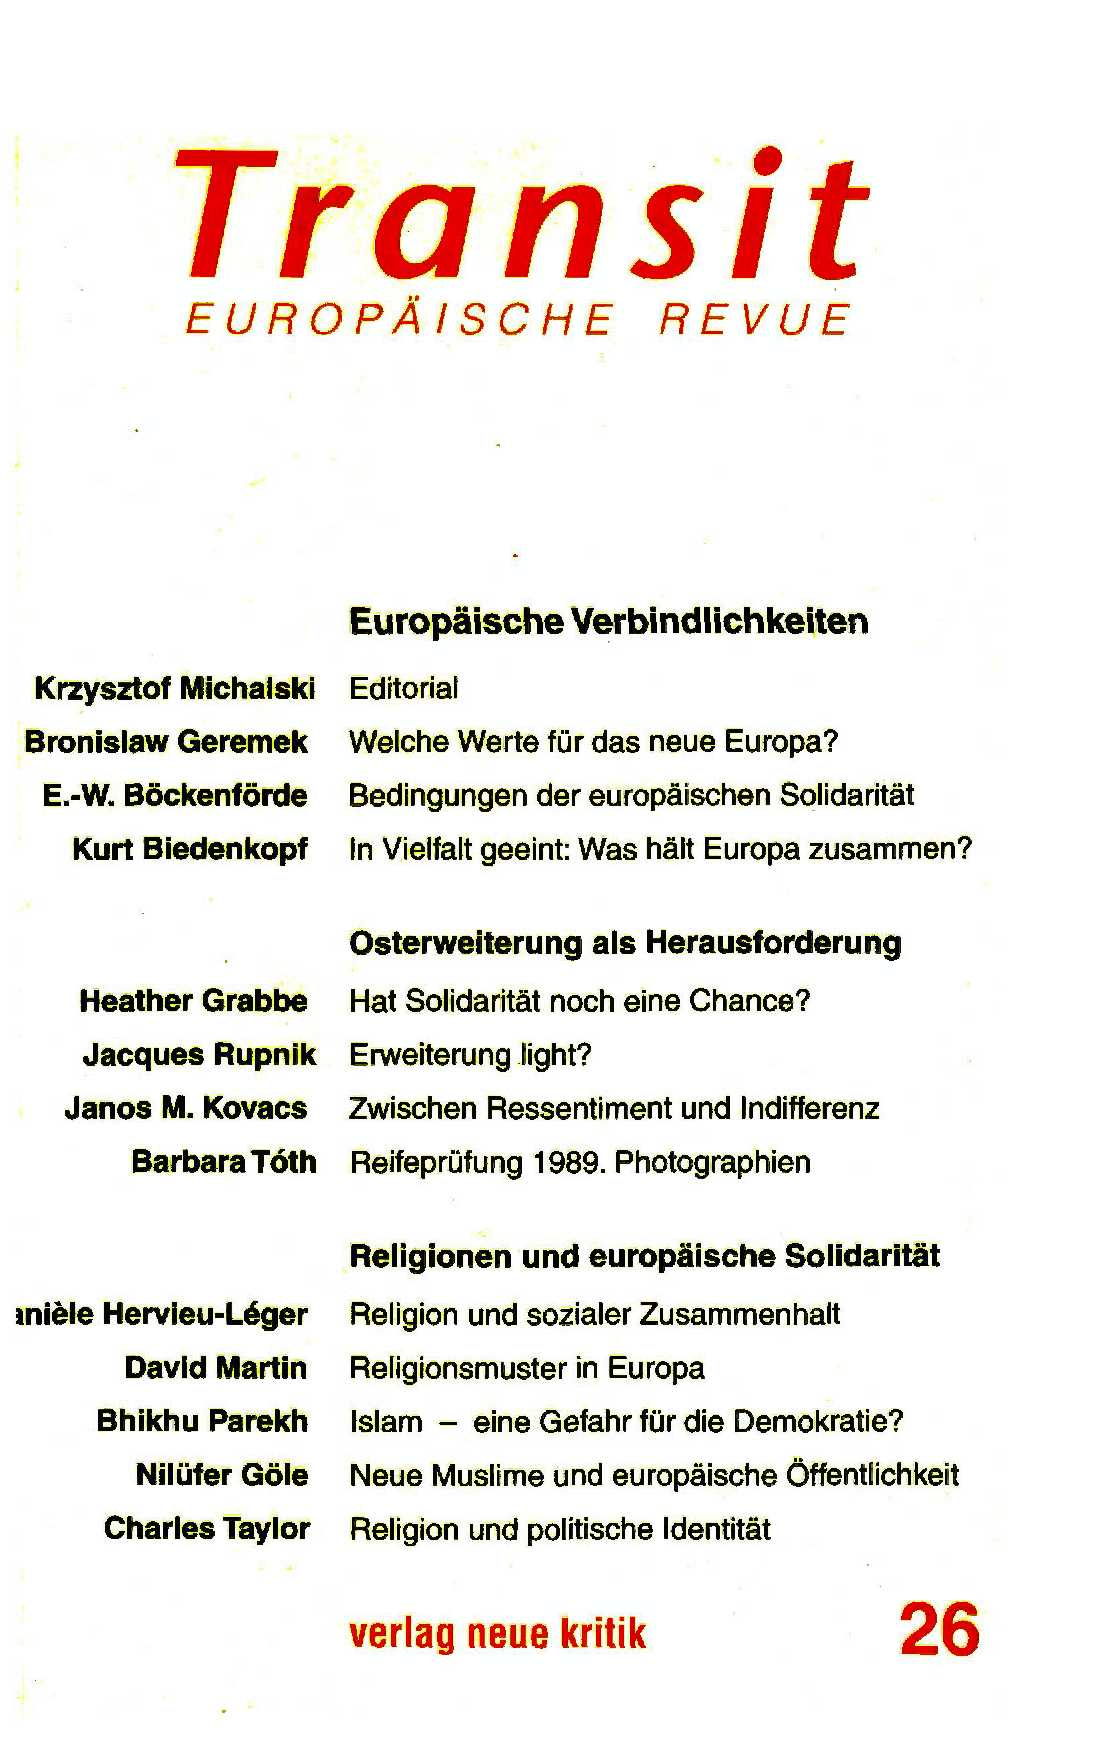 Welche Werte für das neue Europa? Cover Image